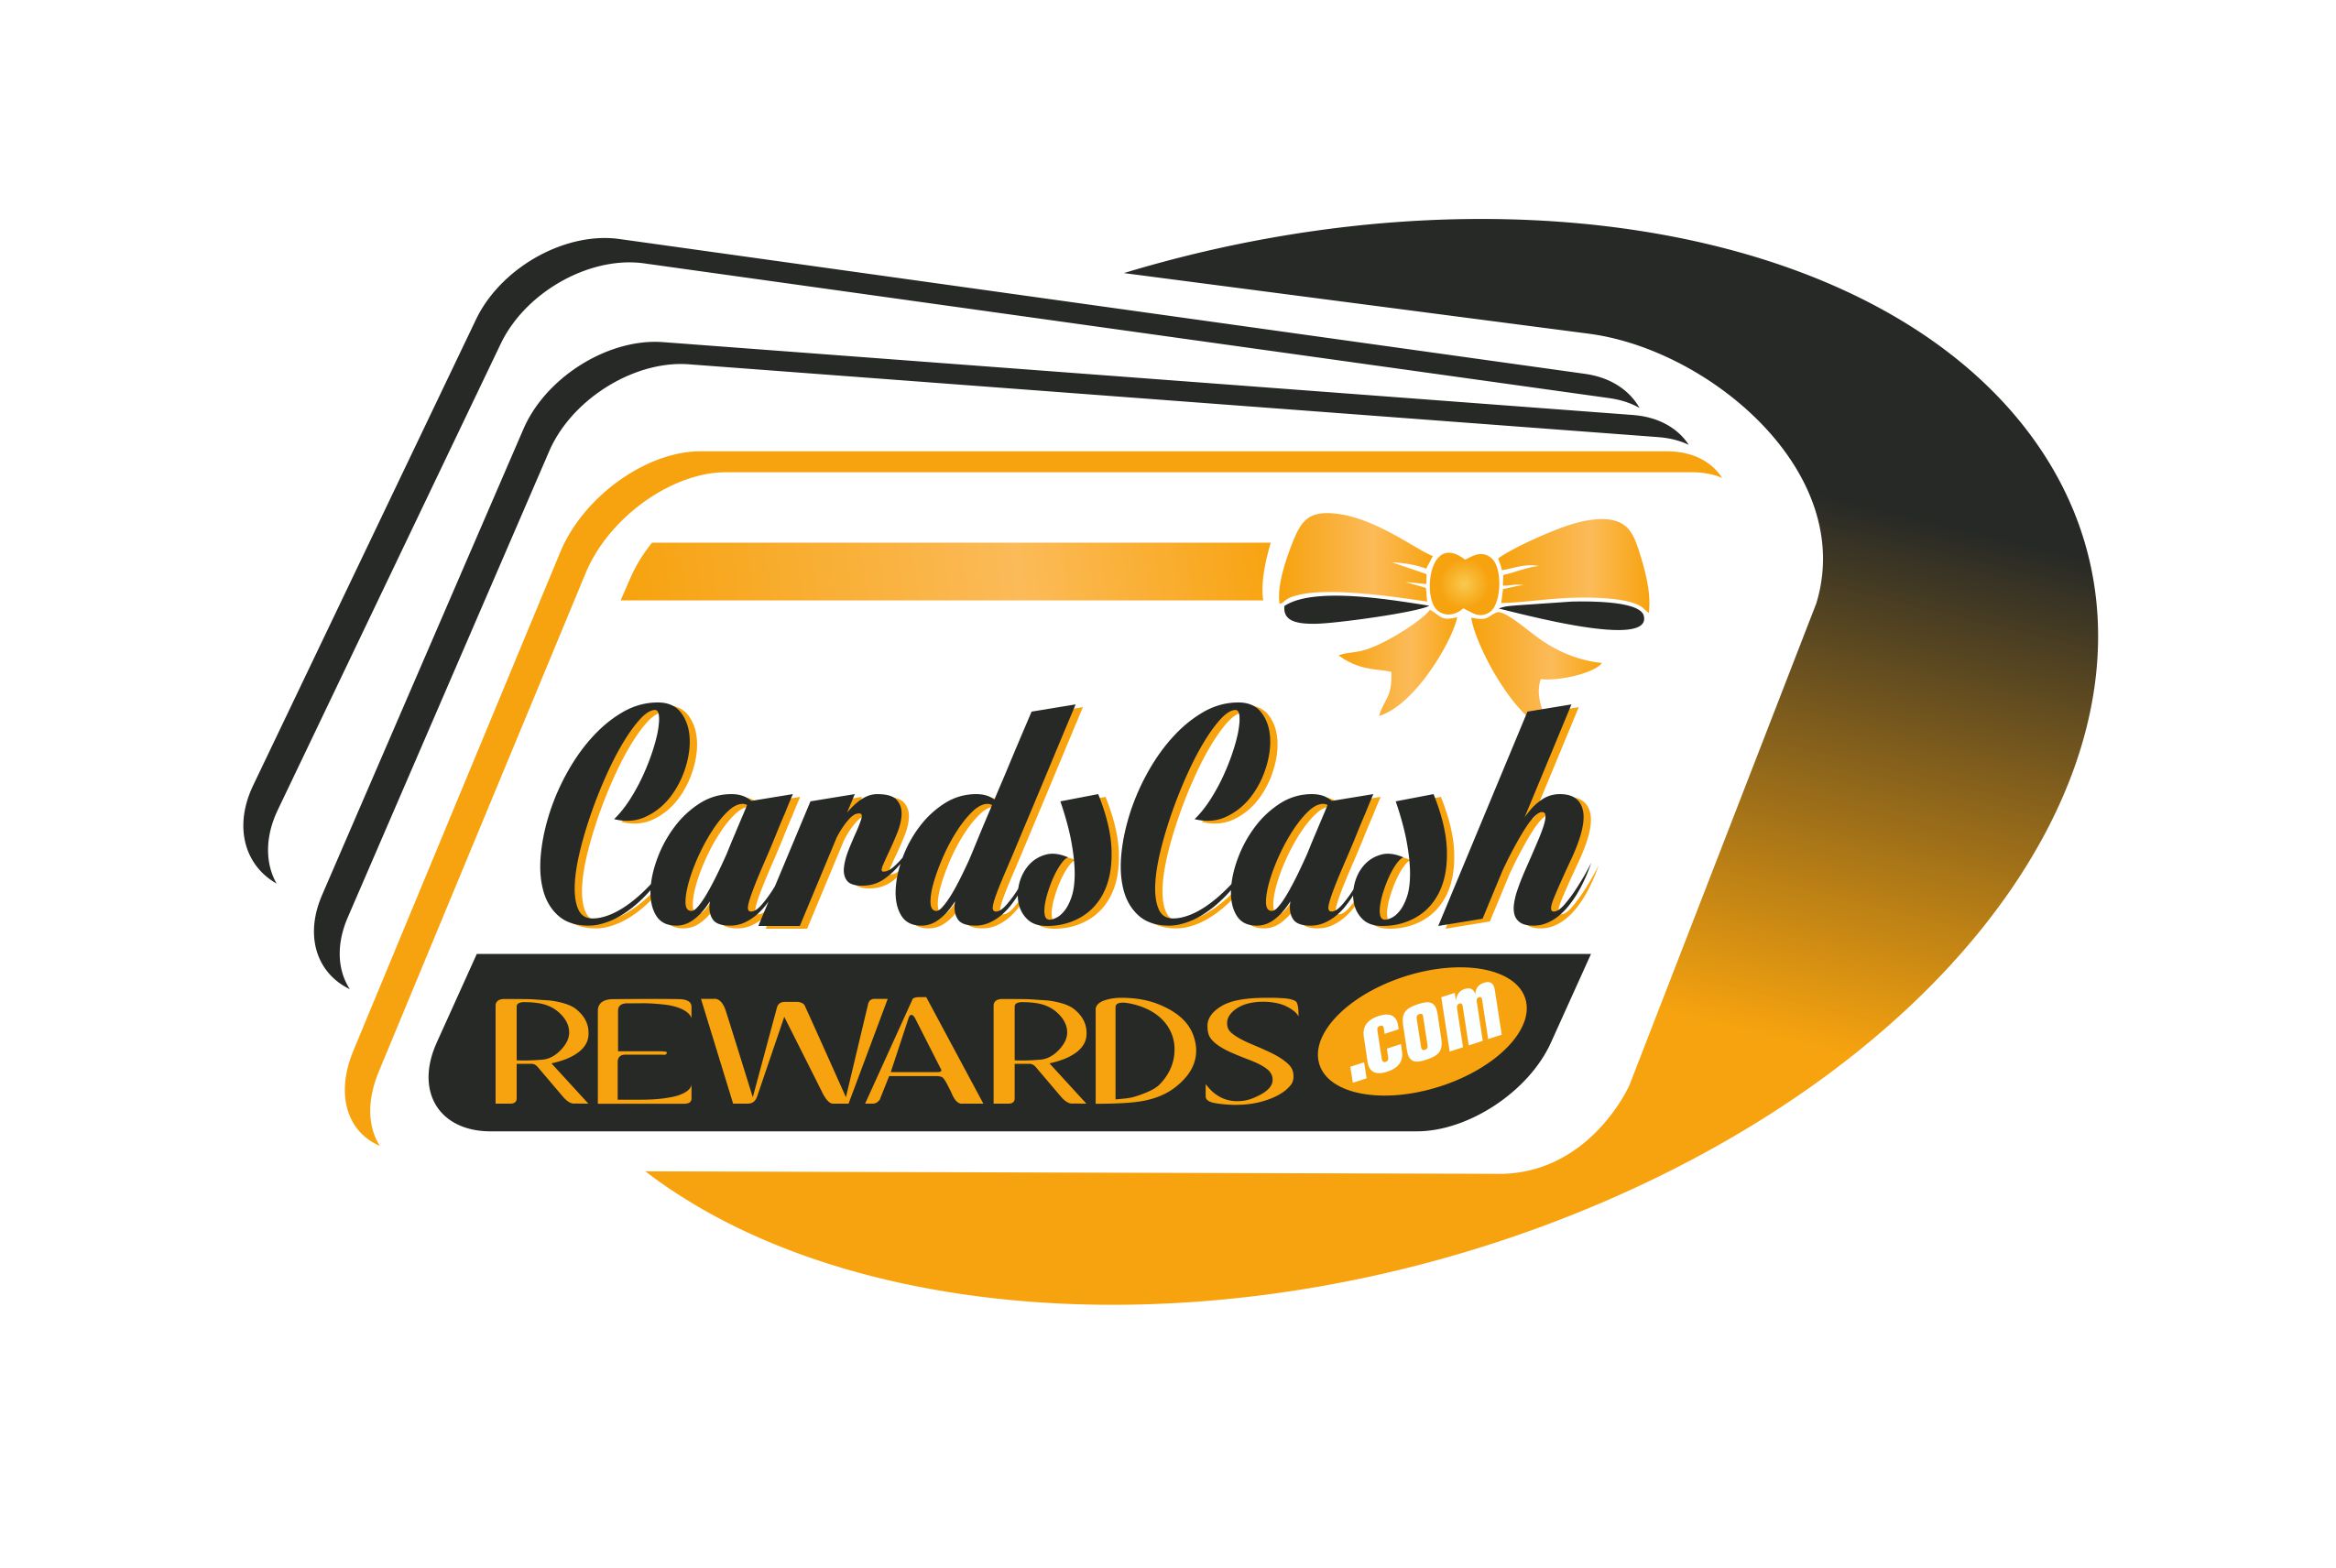 CardsCashRewards.com, Inc.